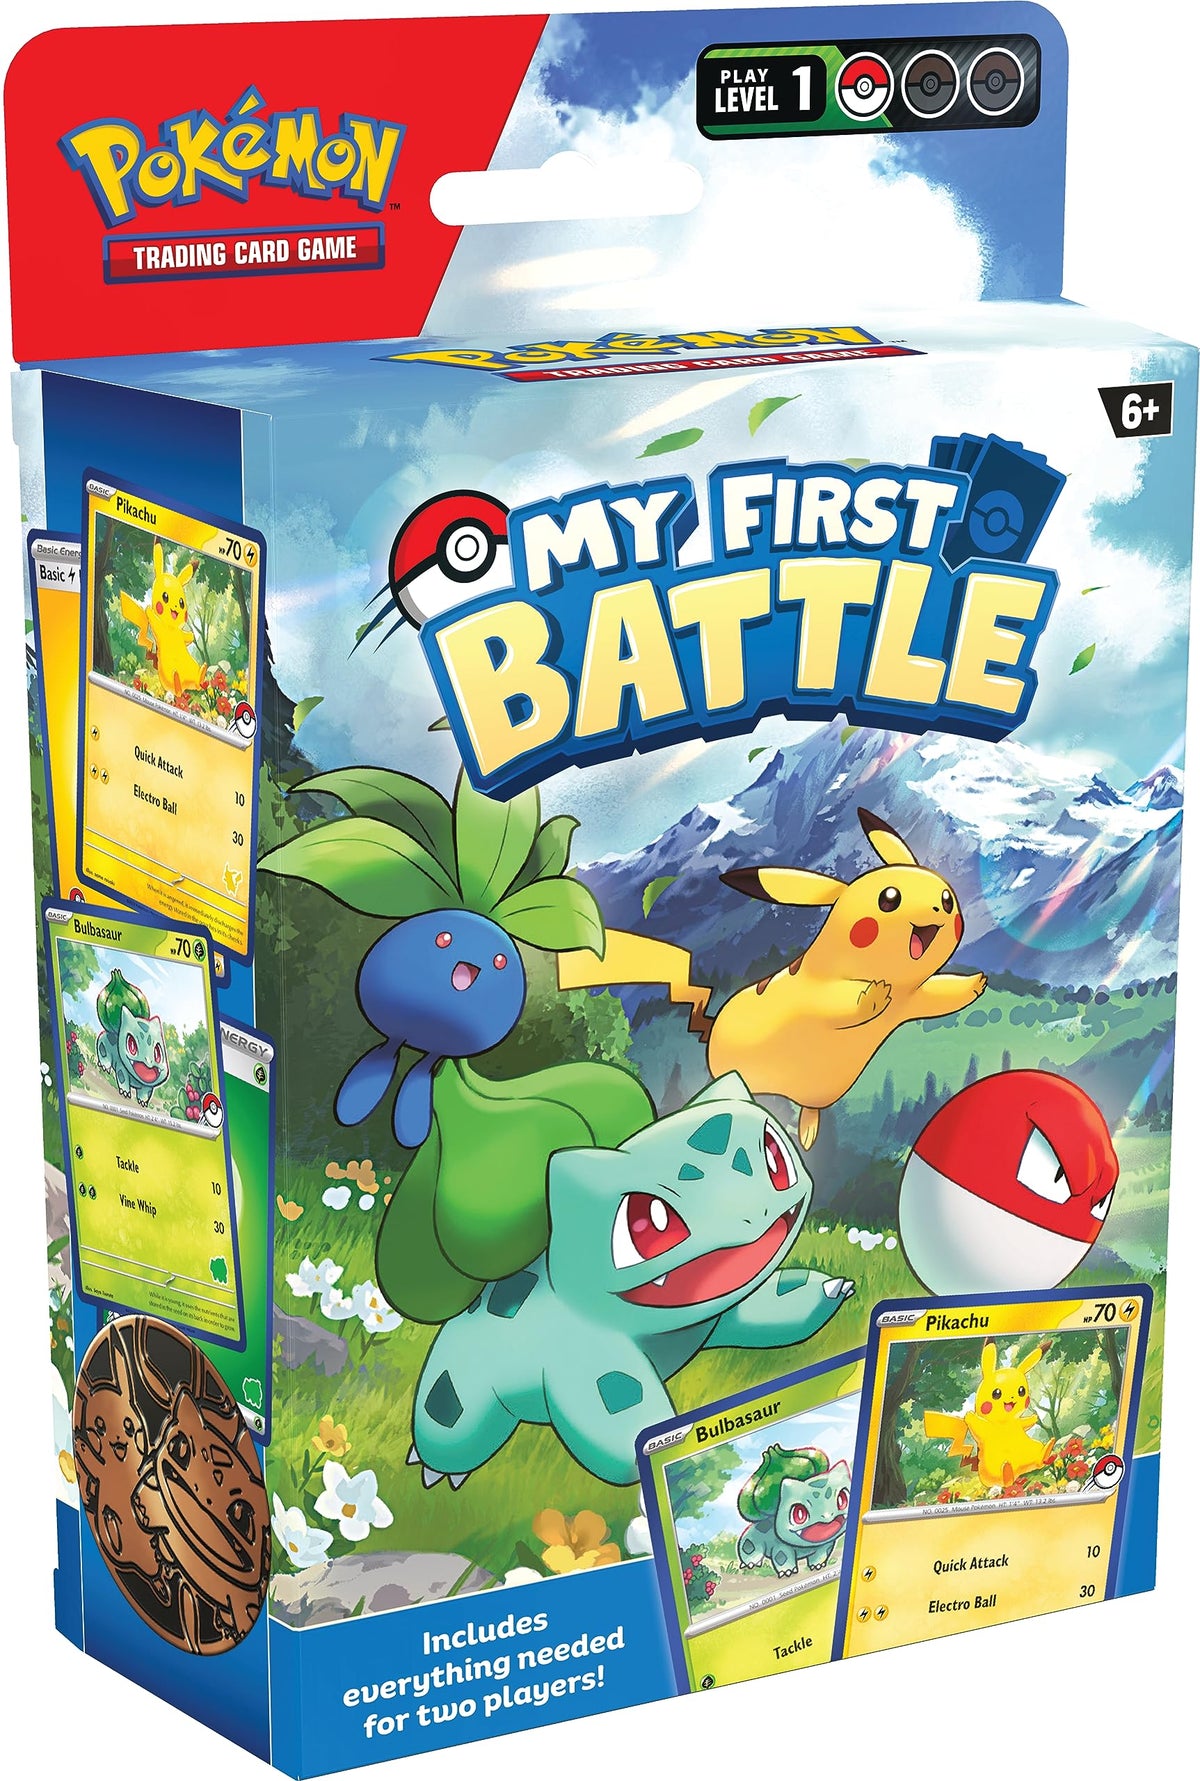 Pokémon: My First Battle (Pikachu & Bulbasaur)